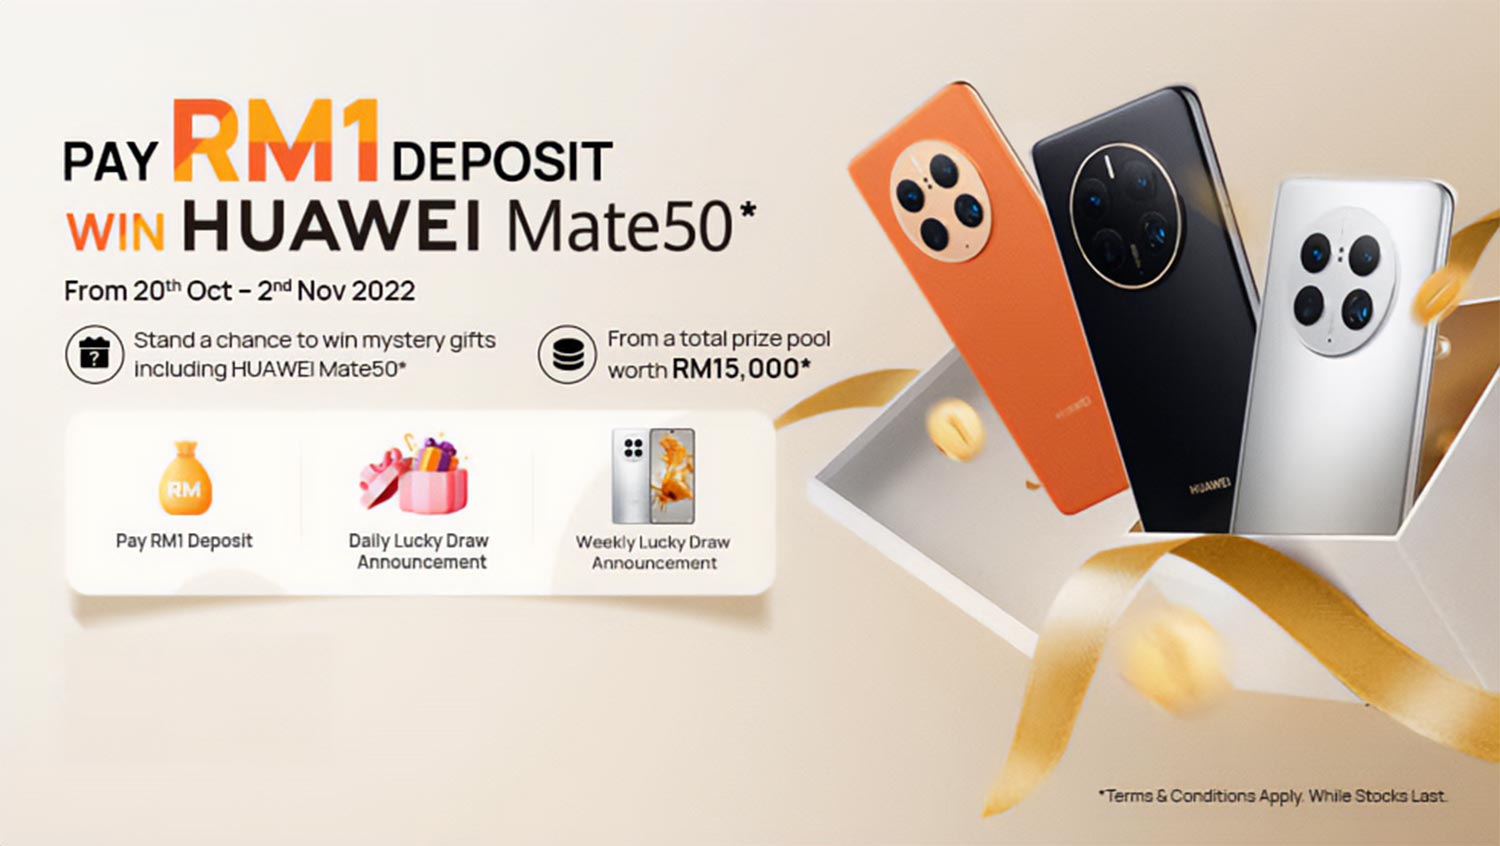 Pratempahan Siri Huawei Mate 50 Kini Dibuka Dengan Deposit RM1 Sahaja